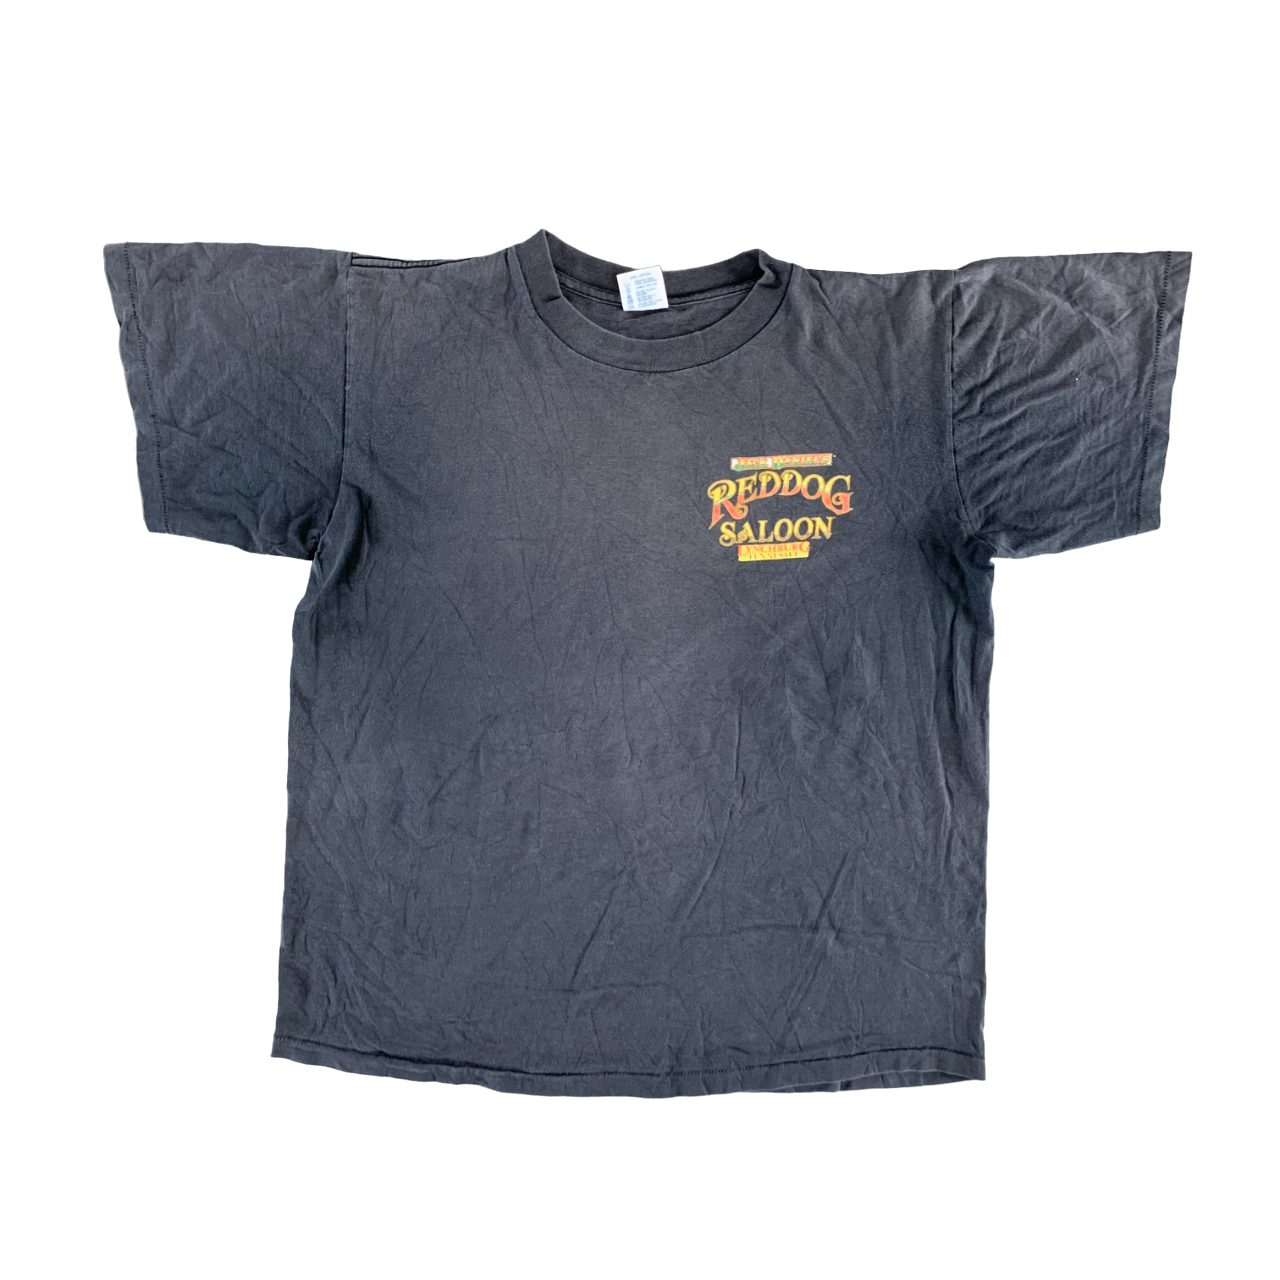 Vintage 1990s Jack Daniel T-shirt size XL